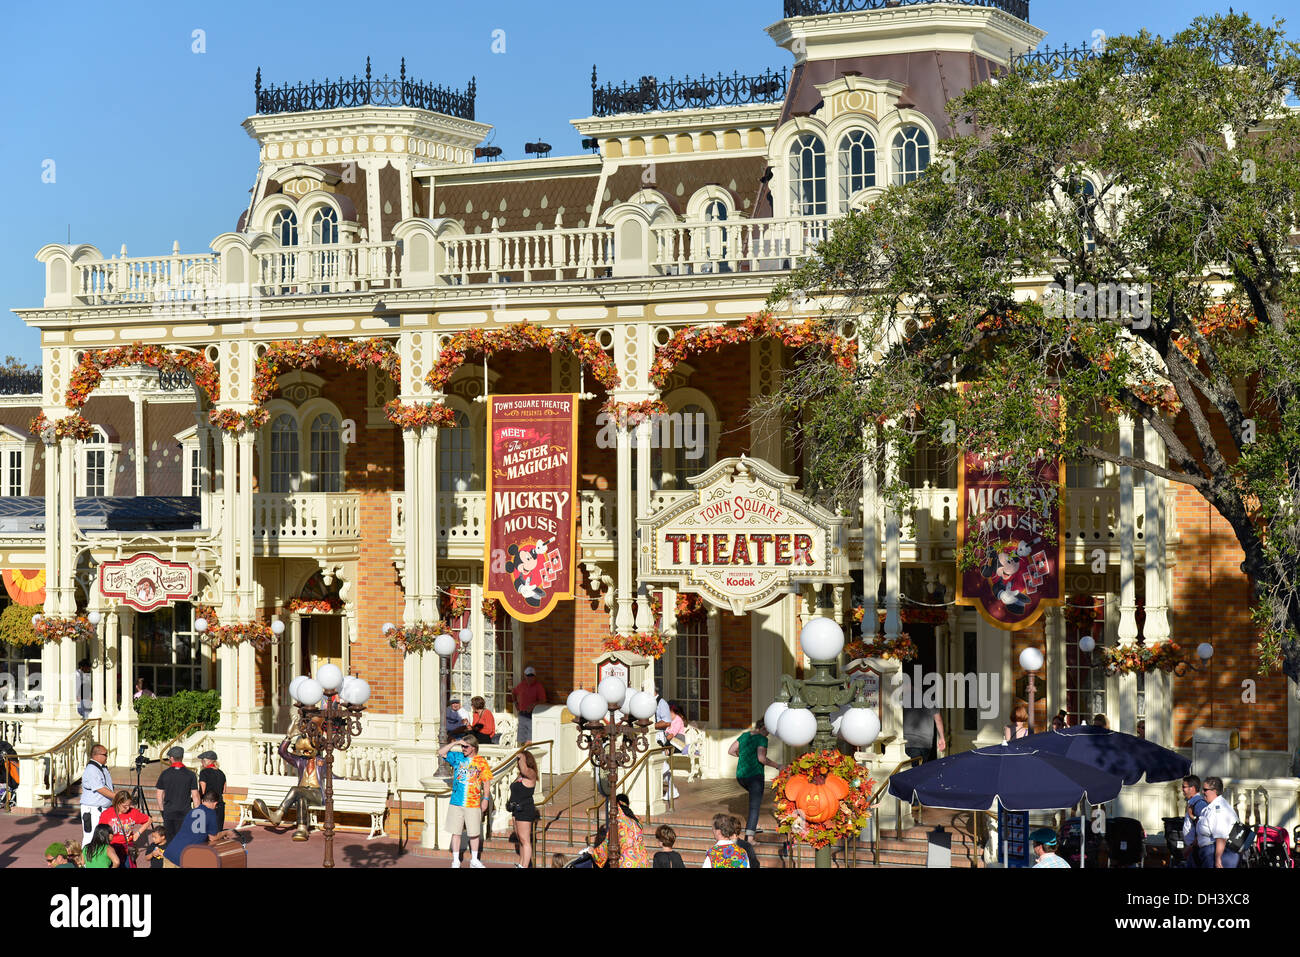 Town Square Theatre à l'entrée du Magic Kingdom, Disney World, Orlando, Floride Banque D'Images